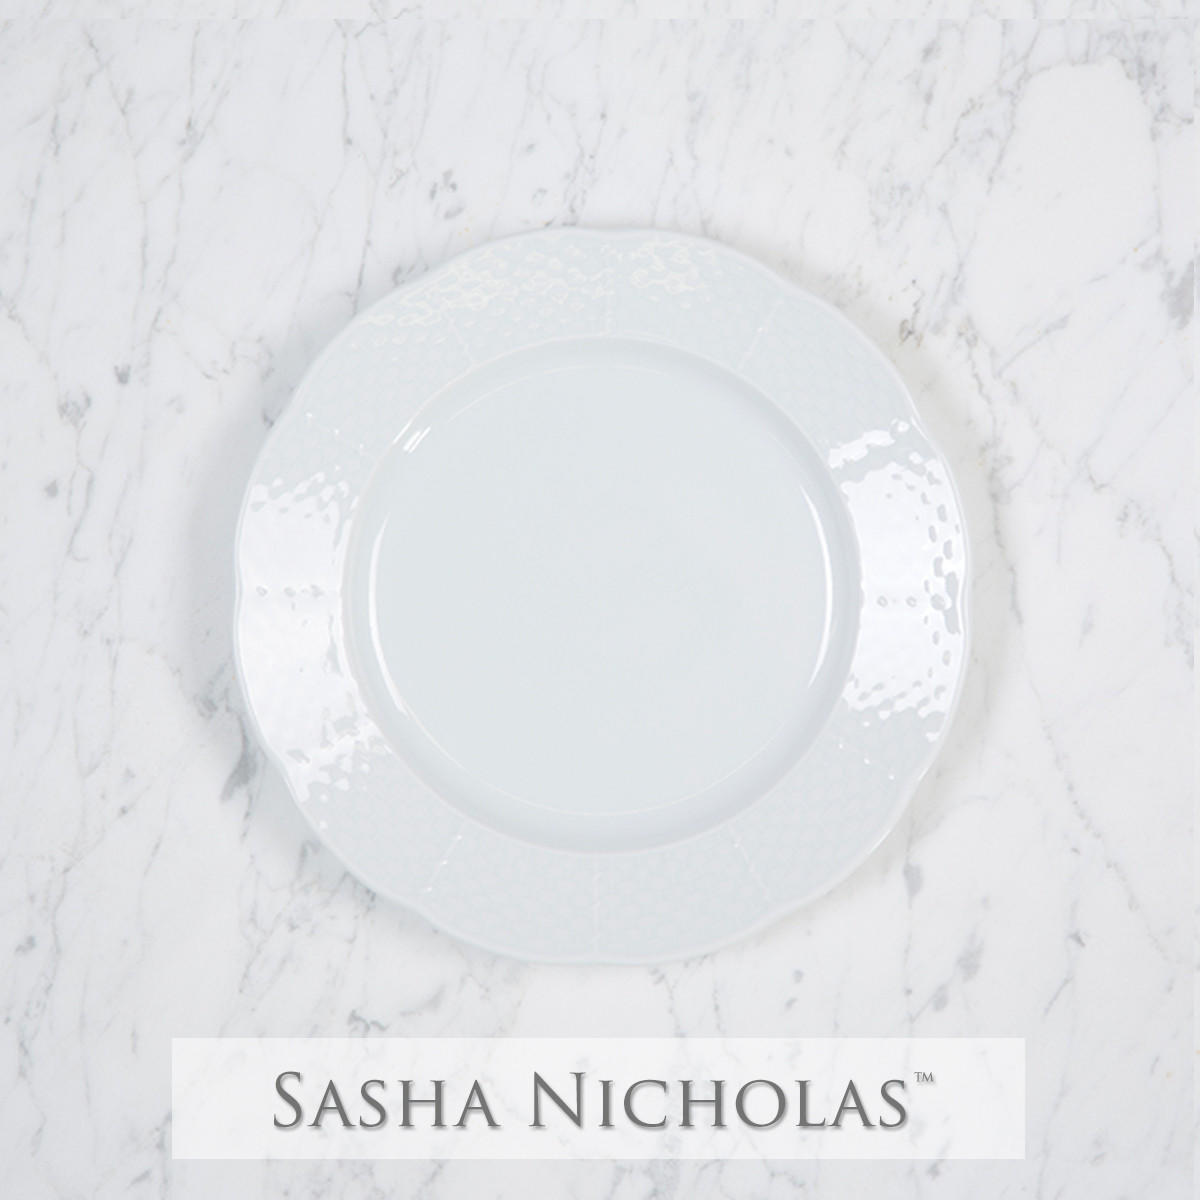 Para-dewey Weave Salad Plate, Para-Dewey SNW111, Sasha Nicholas